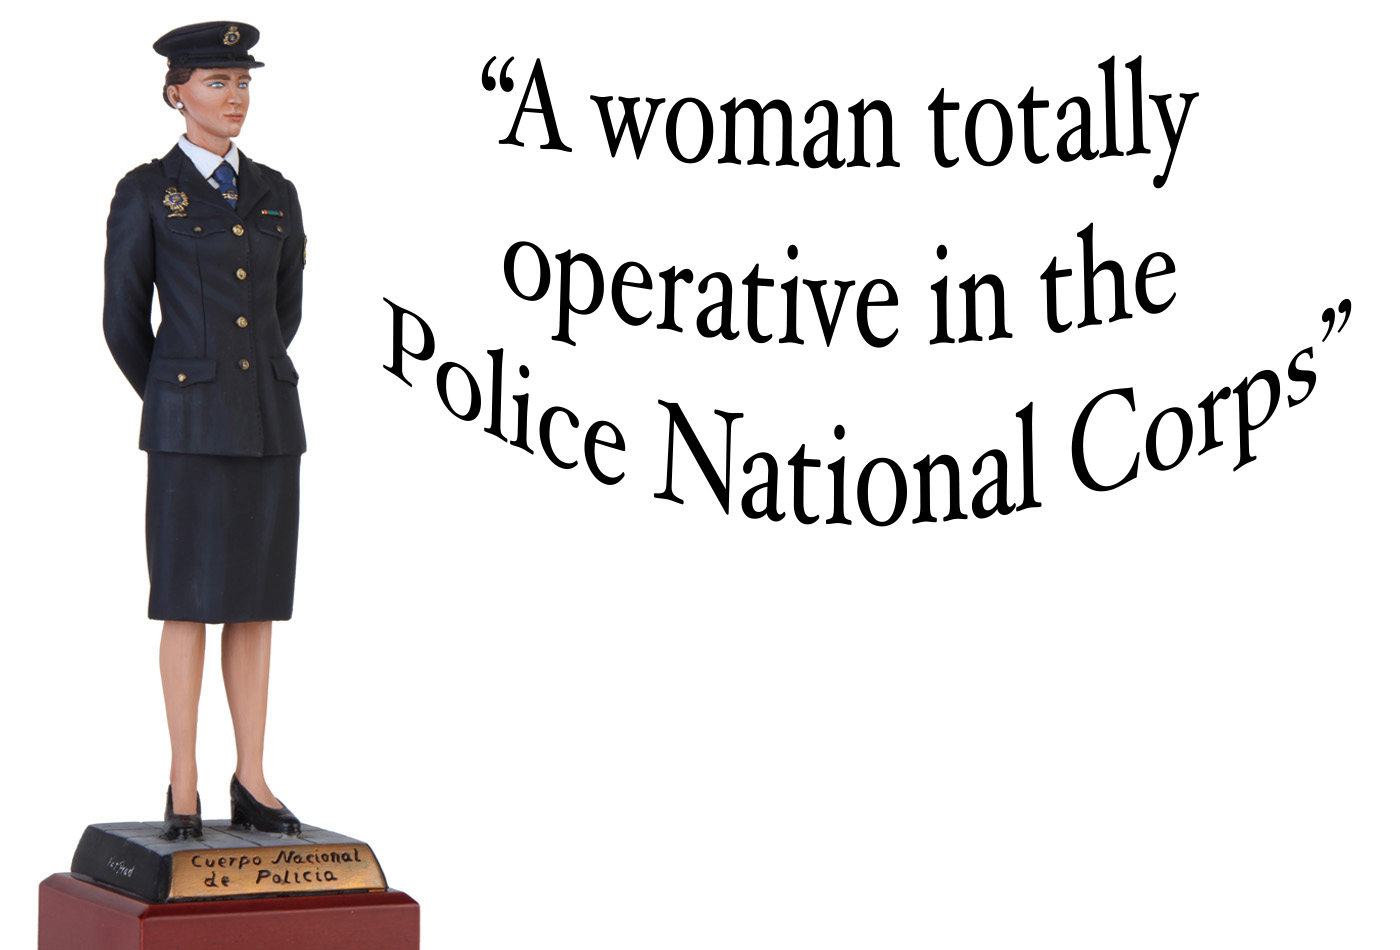 agente femenino cuerpo nacional de policía